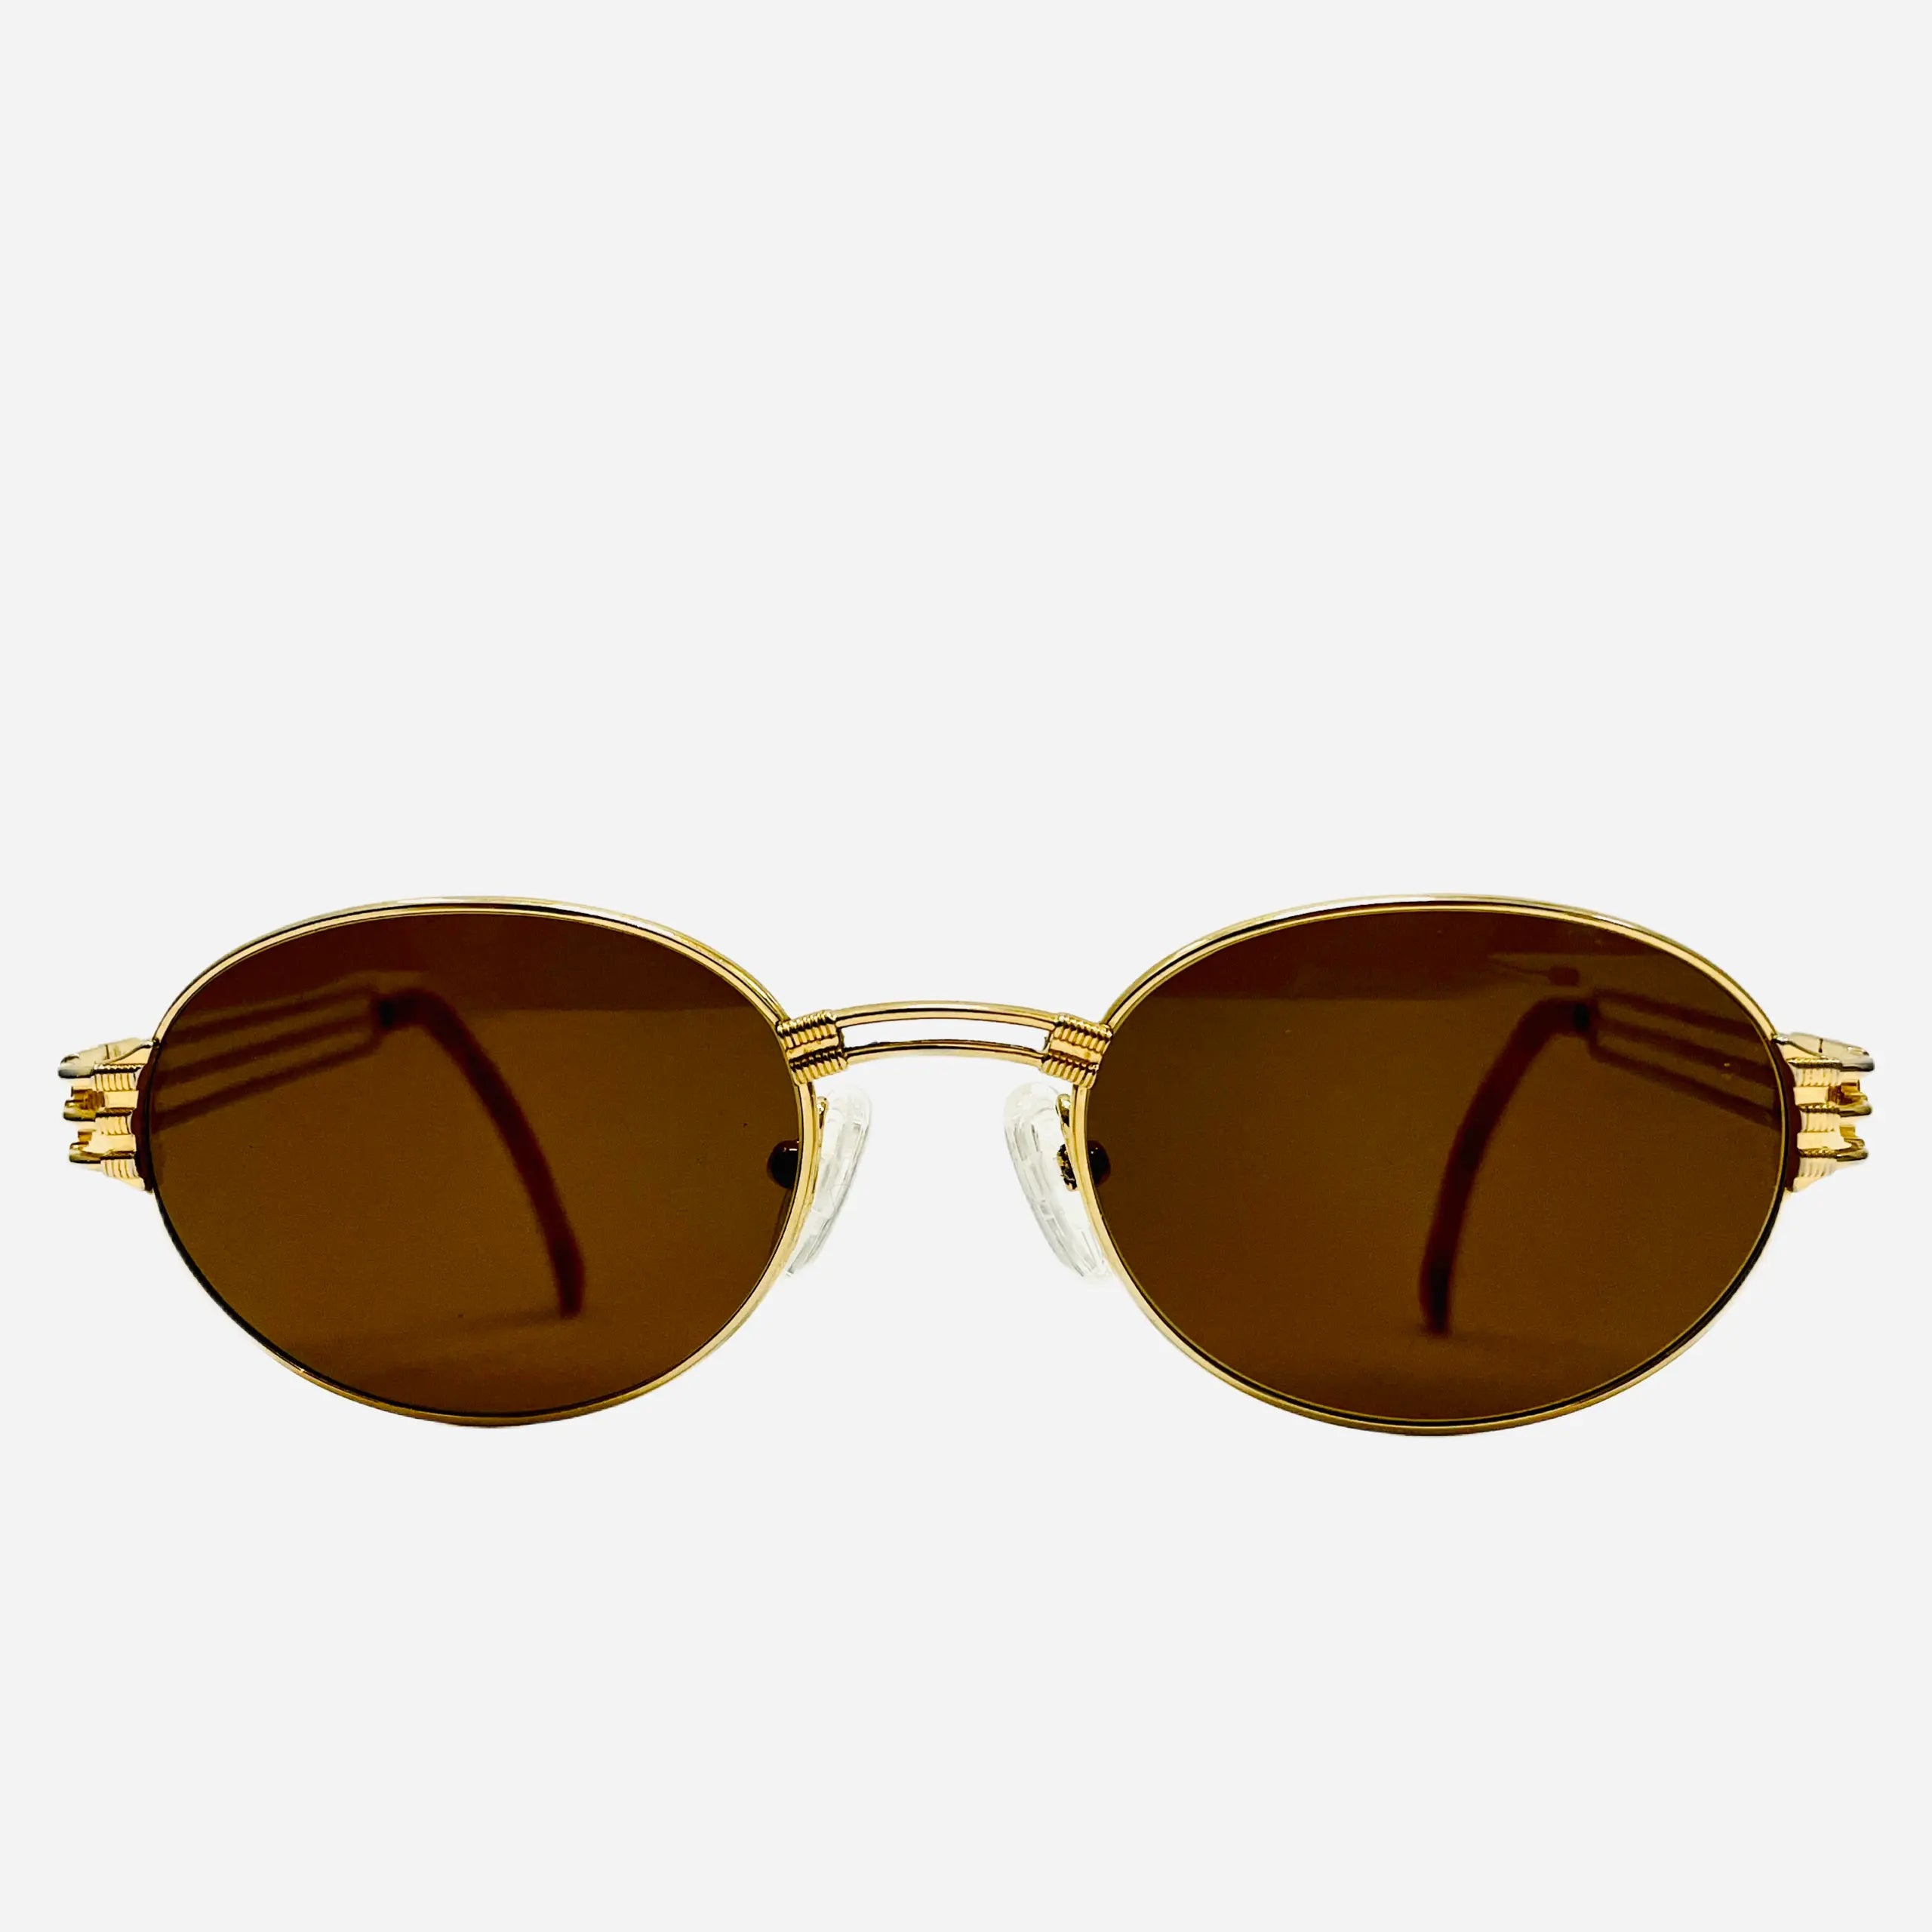 Vintage Sonnenbrille - Gaultier Jean 57-5107 Paul SEEKERS – THE